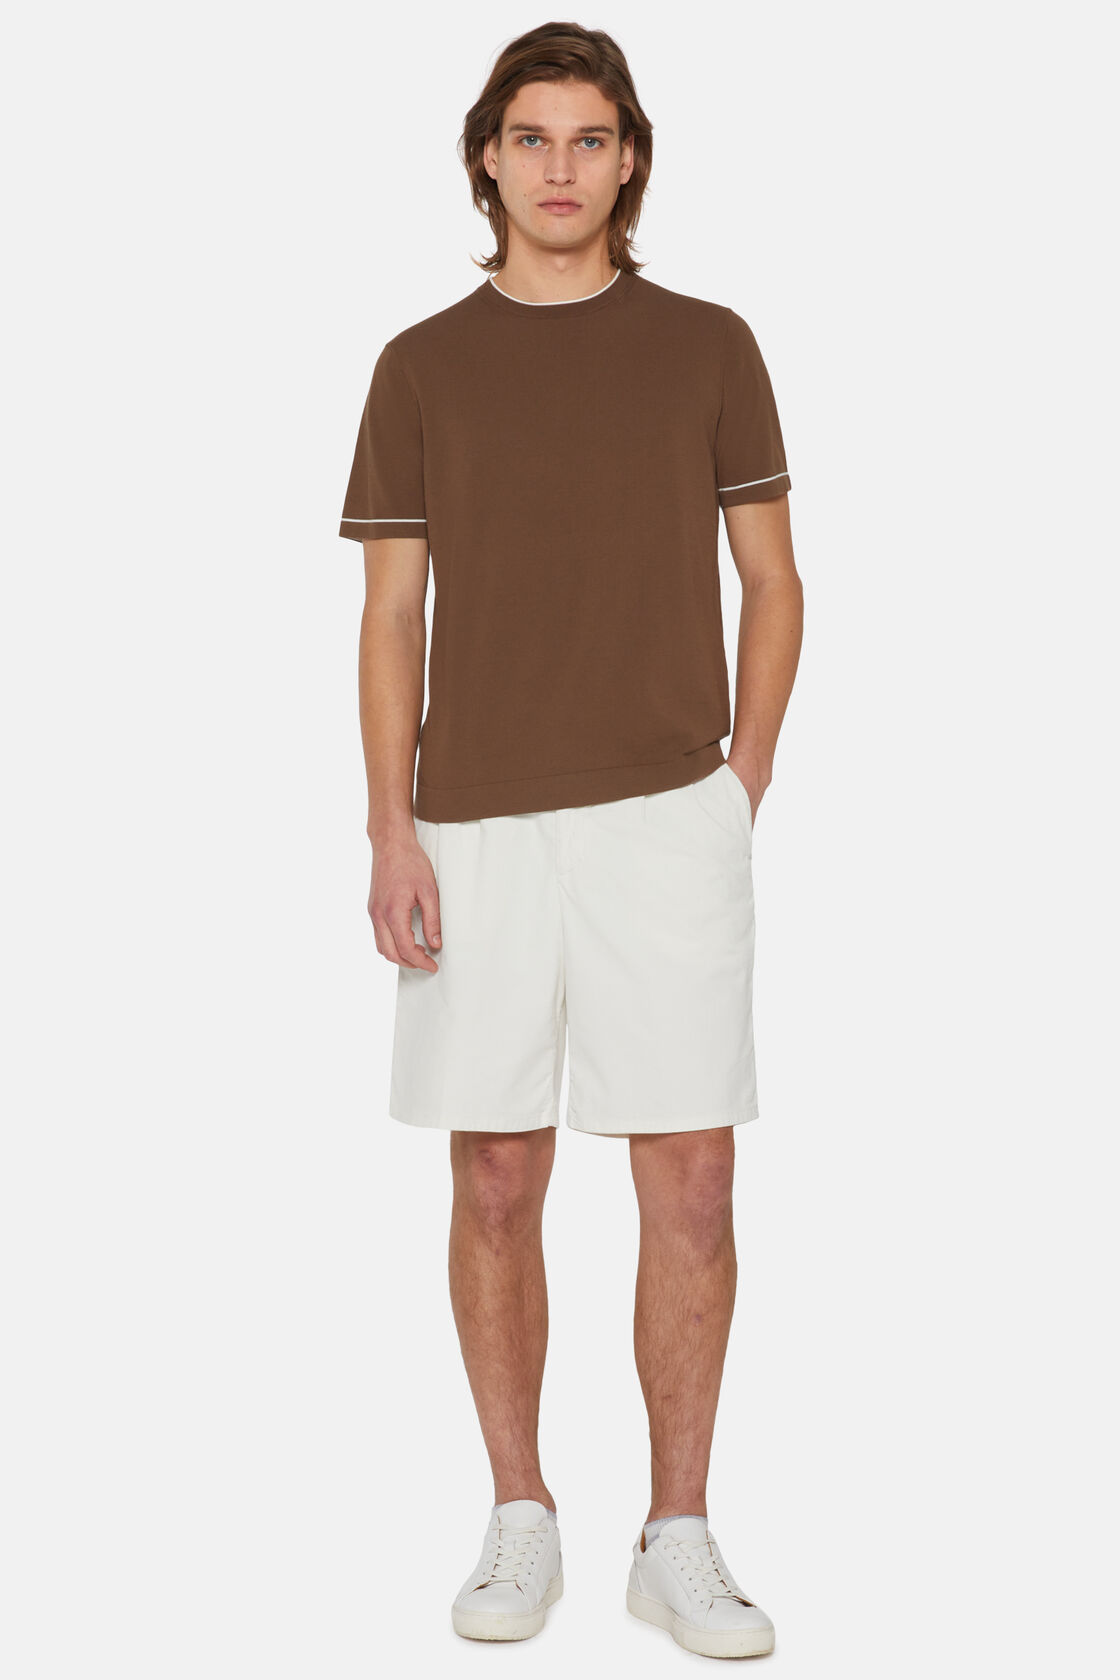 Camiseta De Punto Marrón De Crepé Algodón, marrón, hi-res